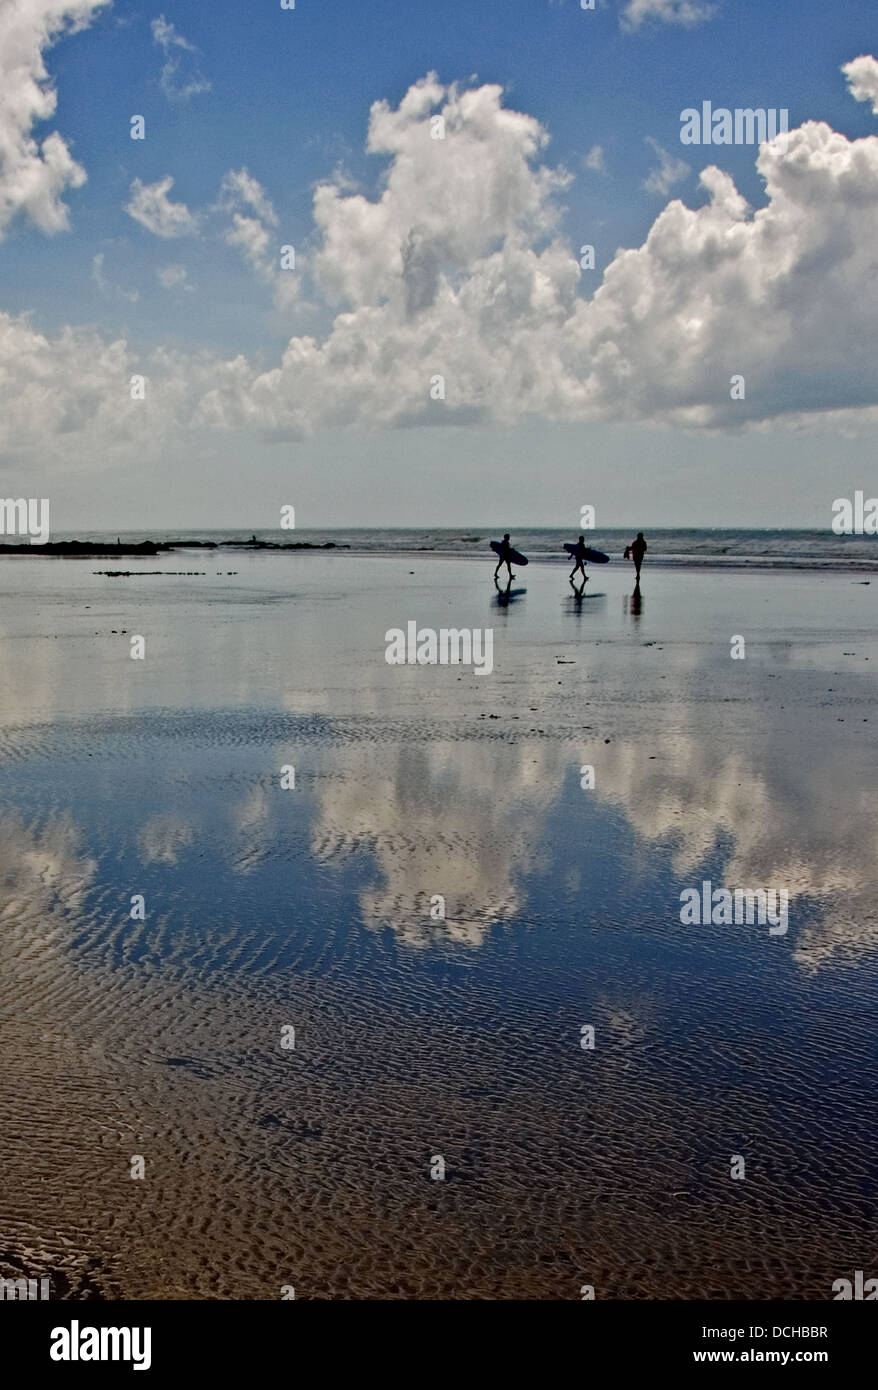 Immagini astratte di nuvole riflesse nella sabbia bagnata a bassa marea su una spiaggia nella regione di Vendee in Francia. Foto Stock